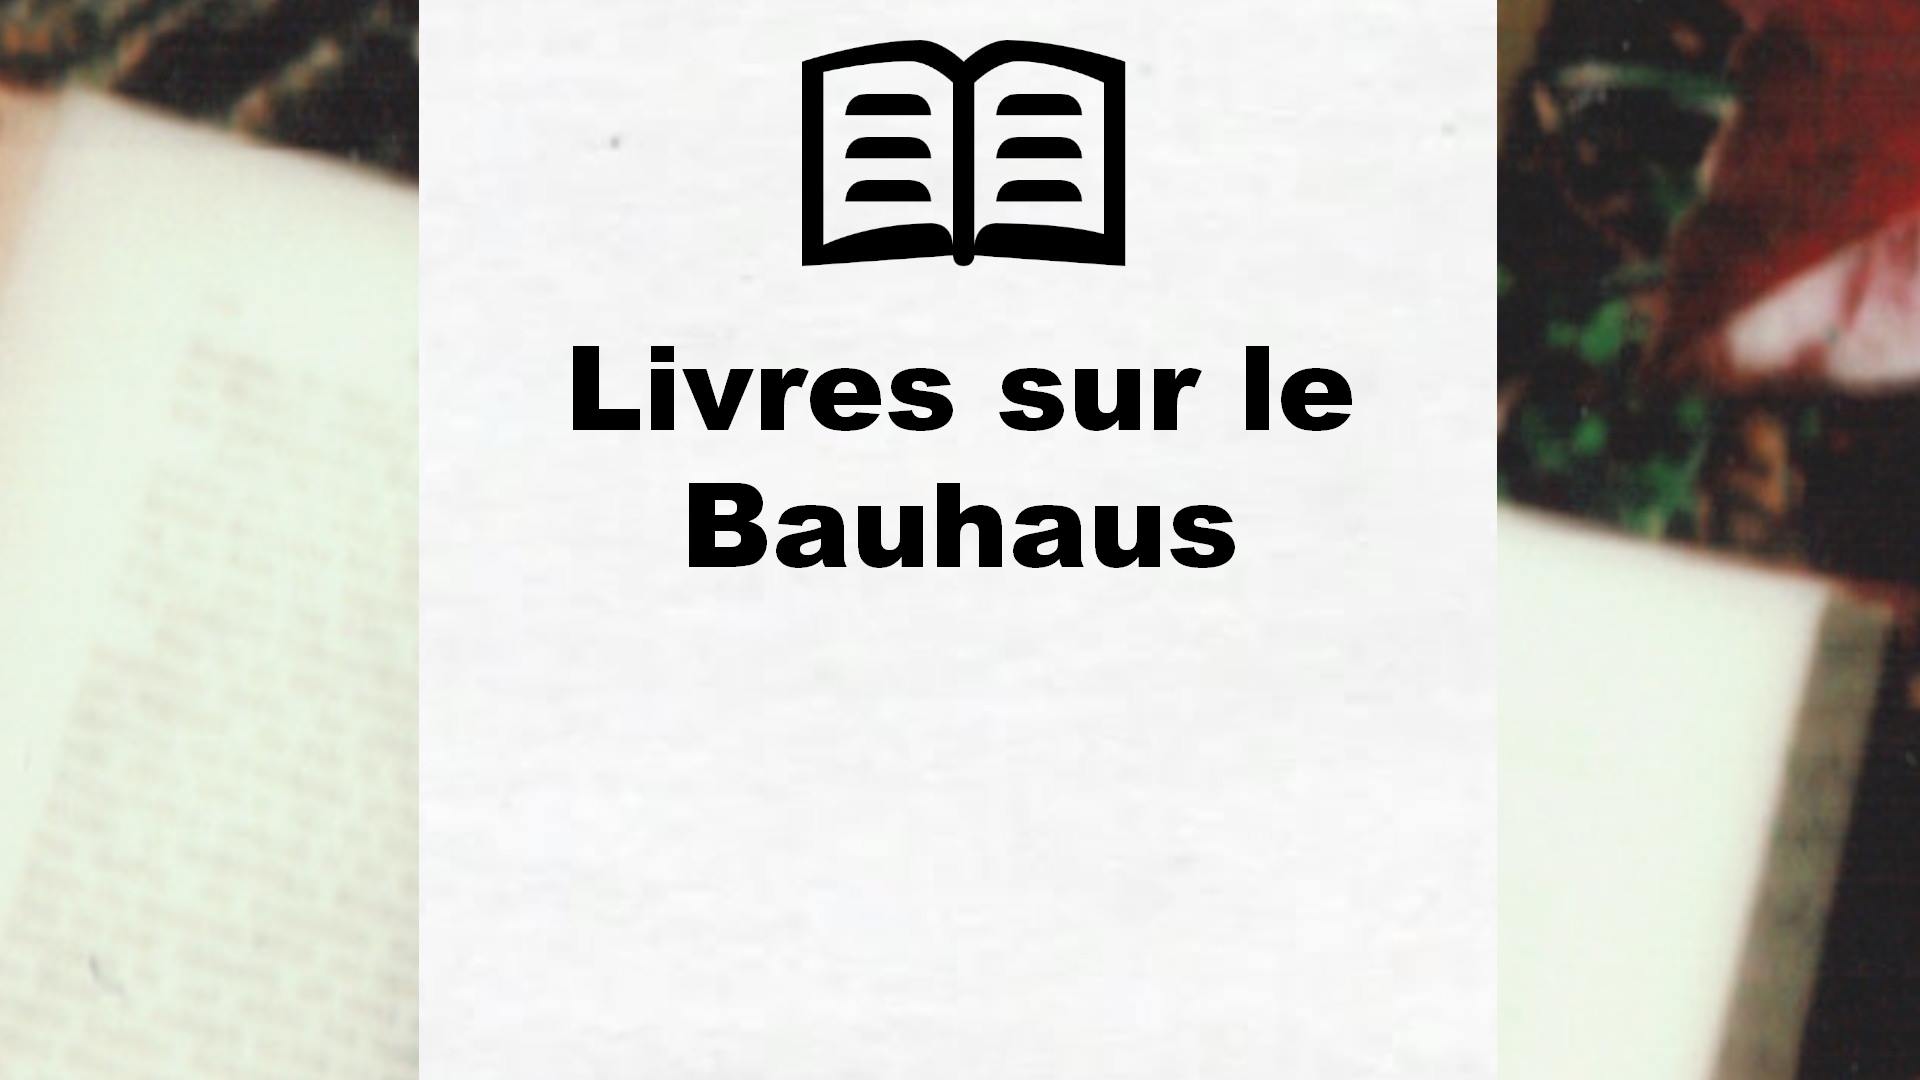 Livres sur le Bauhaus